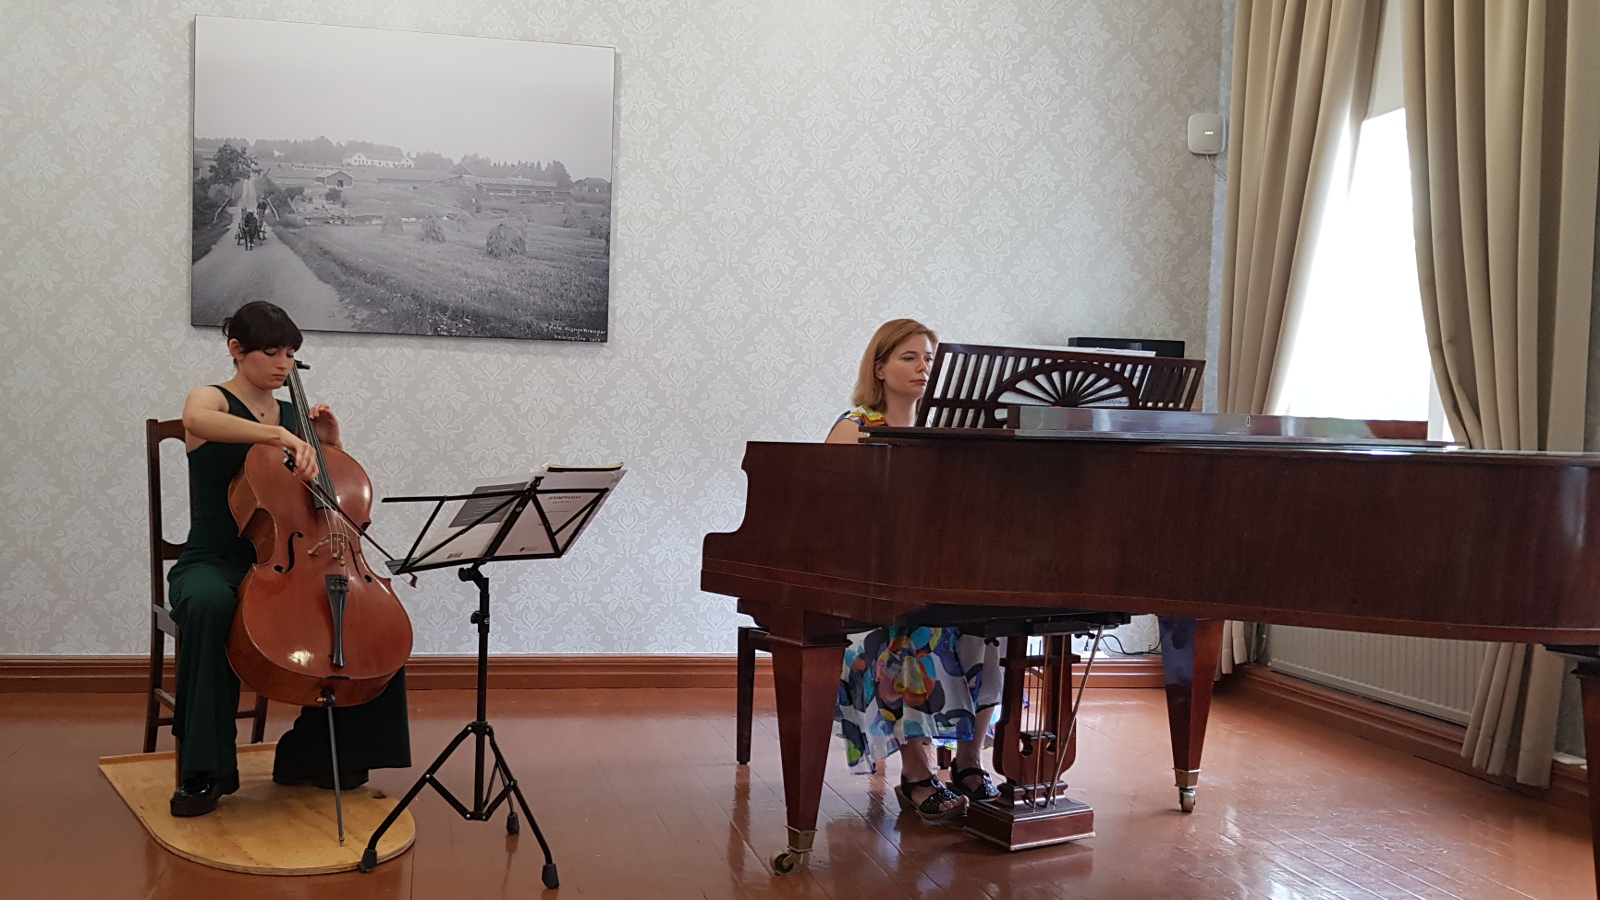 Kuvassa on Maria Morfin Venäläinen soittamassa selloa tumman vihreässä housuasussa ja oikealla Liisa Malmivaara säestämässä flyygelin ääressä. Taustalla on musta-valkoinen taulu vanhasta valokuvasta.